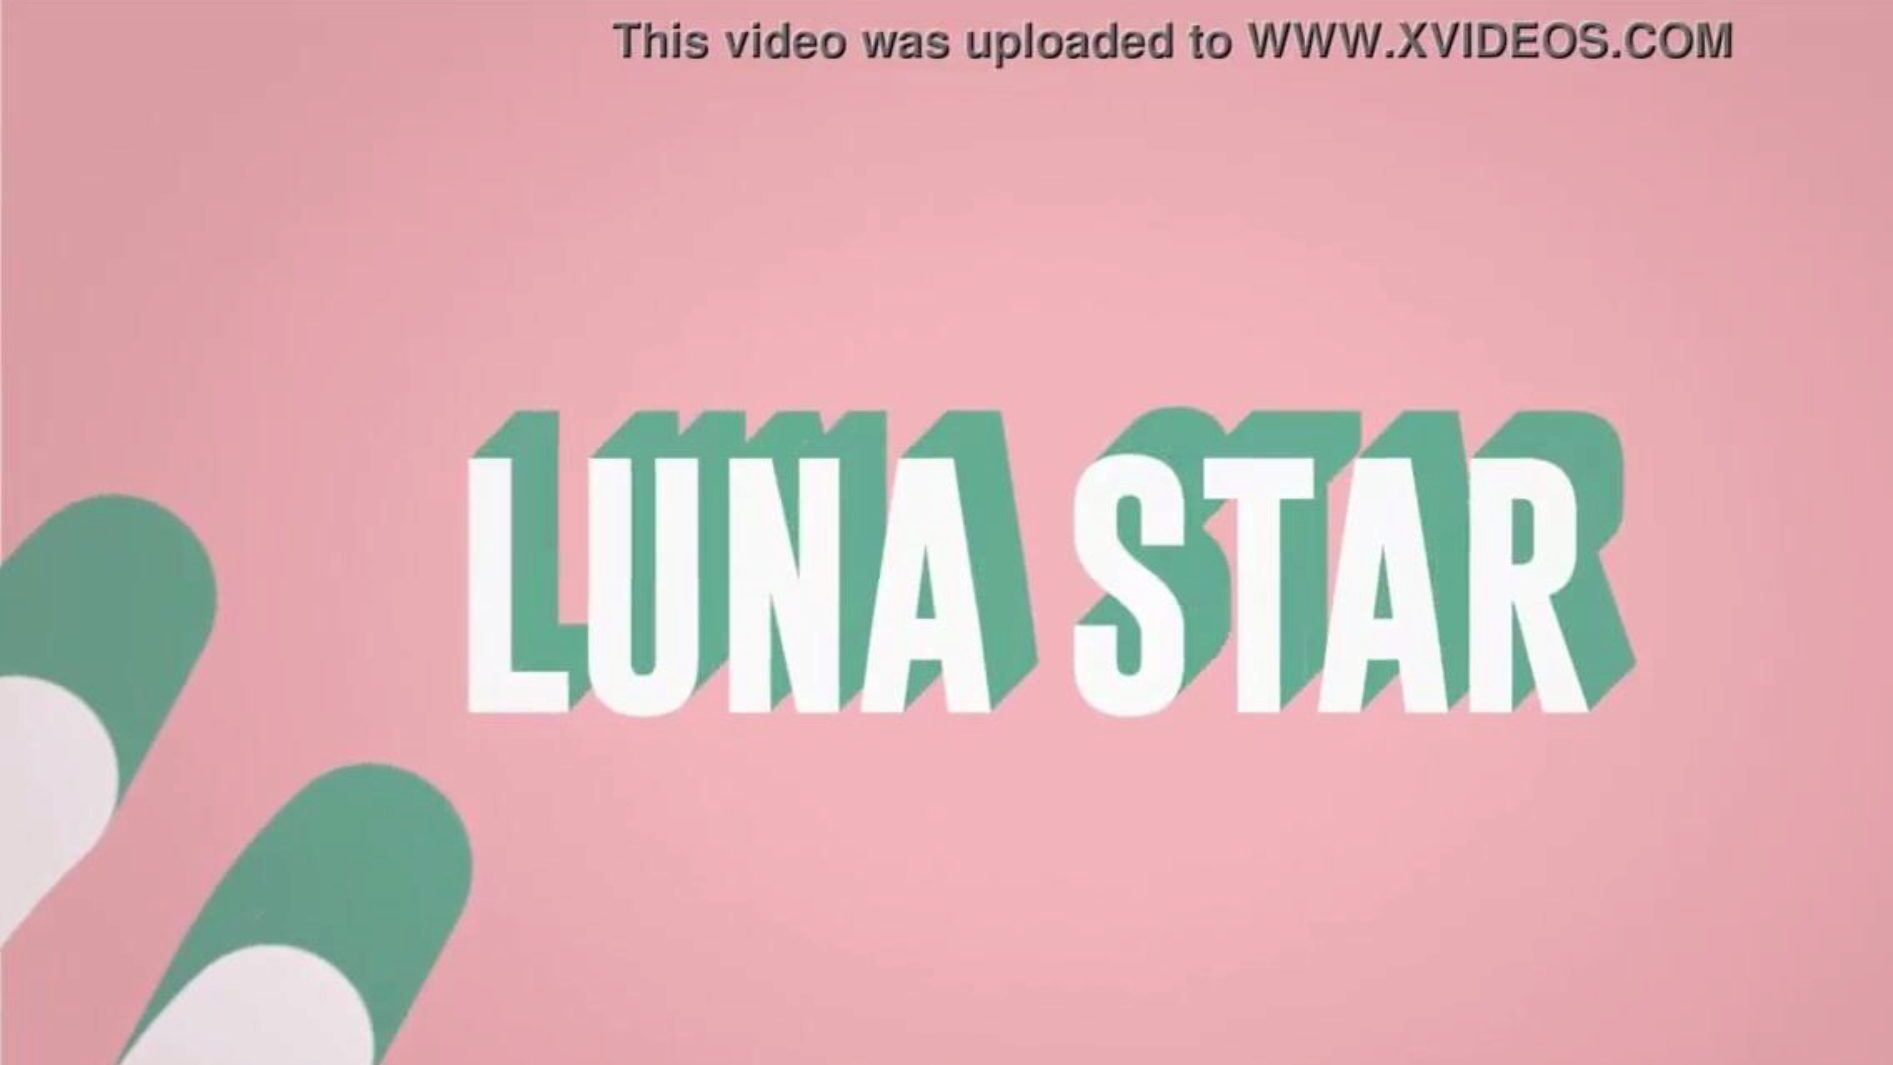 è il mio cazzo di wifi: episodio di Brazzers con Luna Star; vedi pieno su www.zzfull.com/luna